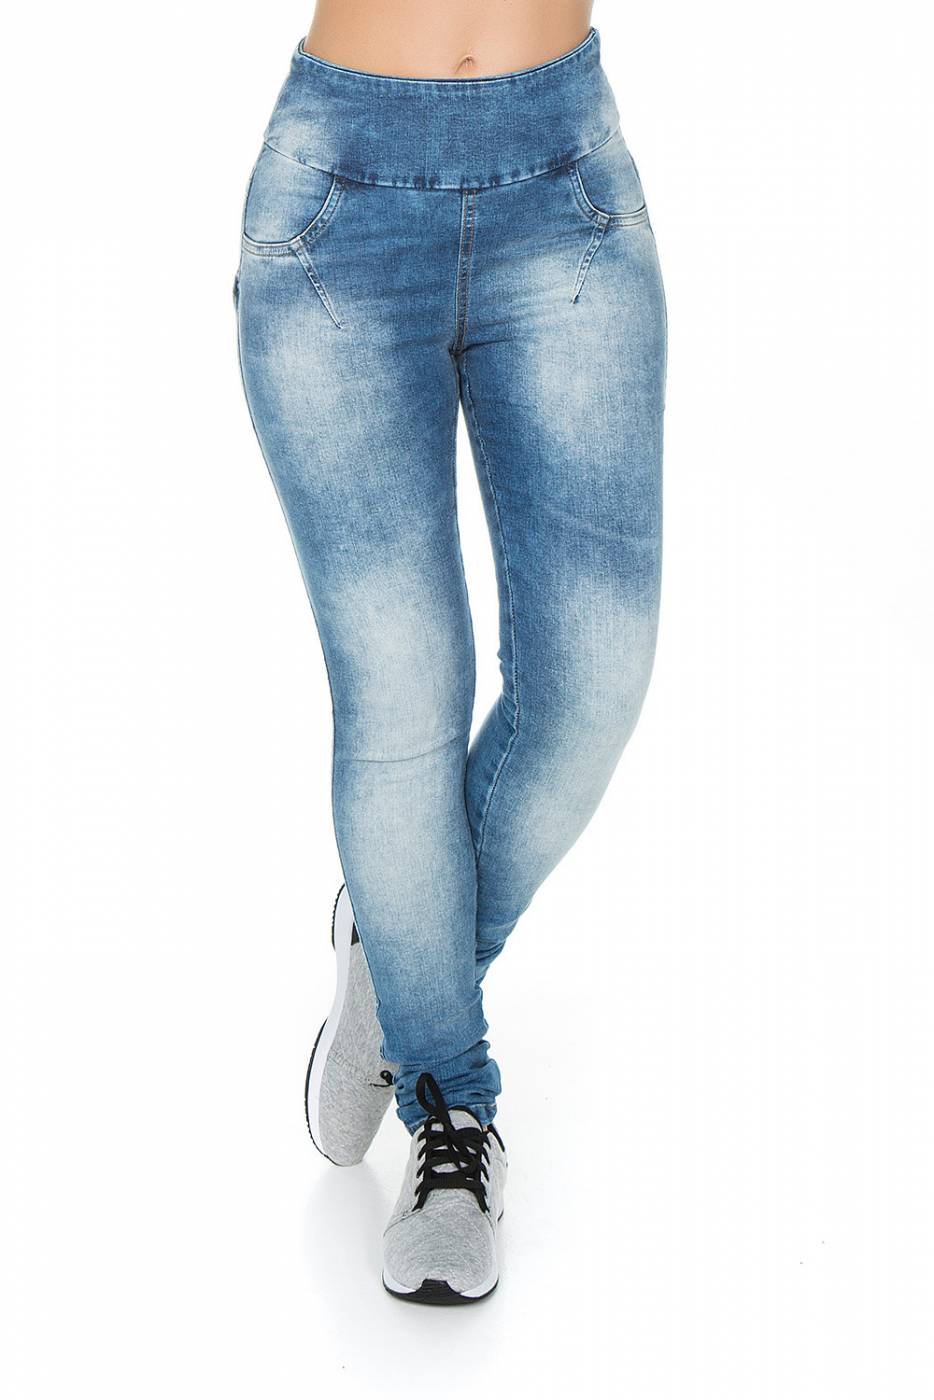 Calça Legging Jeans Live Feminina - Sportlins - Calçados e Esportes